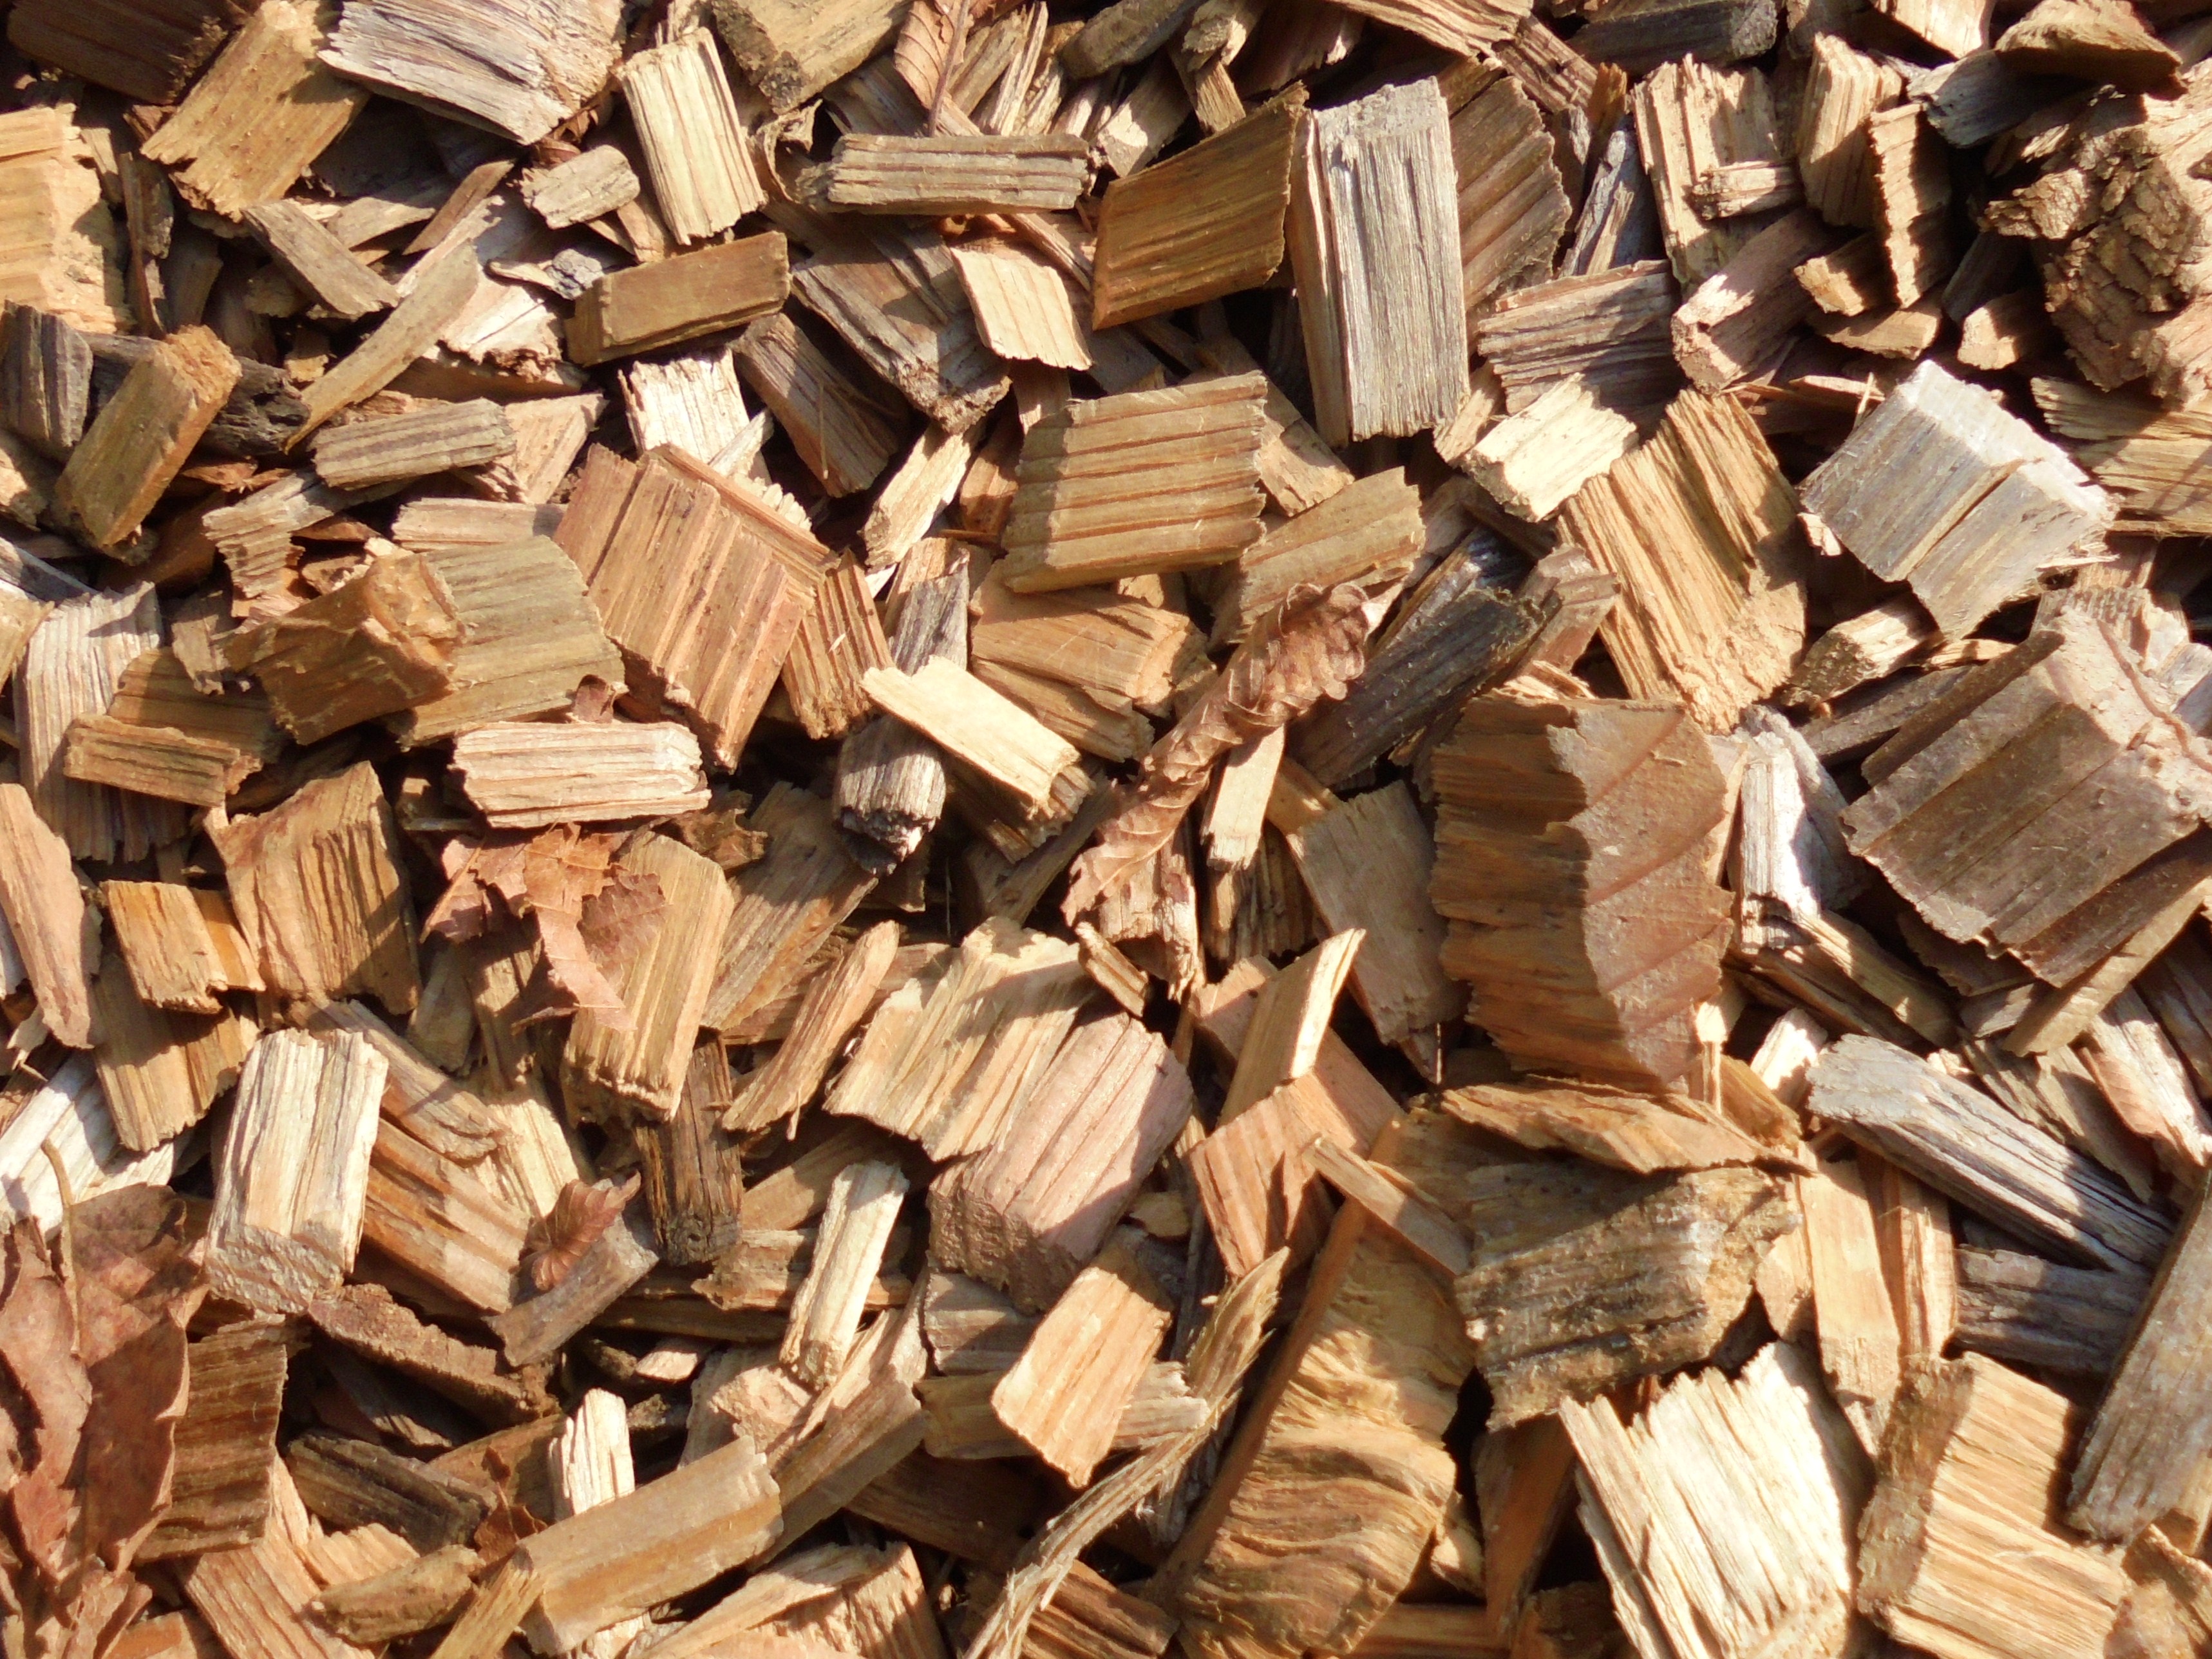 原材料は持続可能な森林経営の認証を取得した森林から供給される間伐材